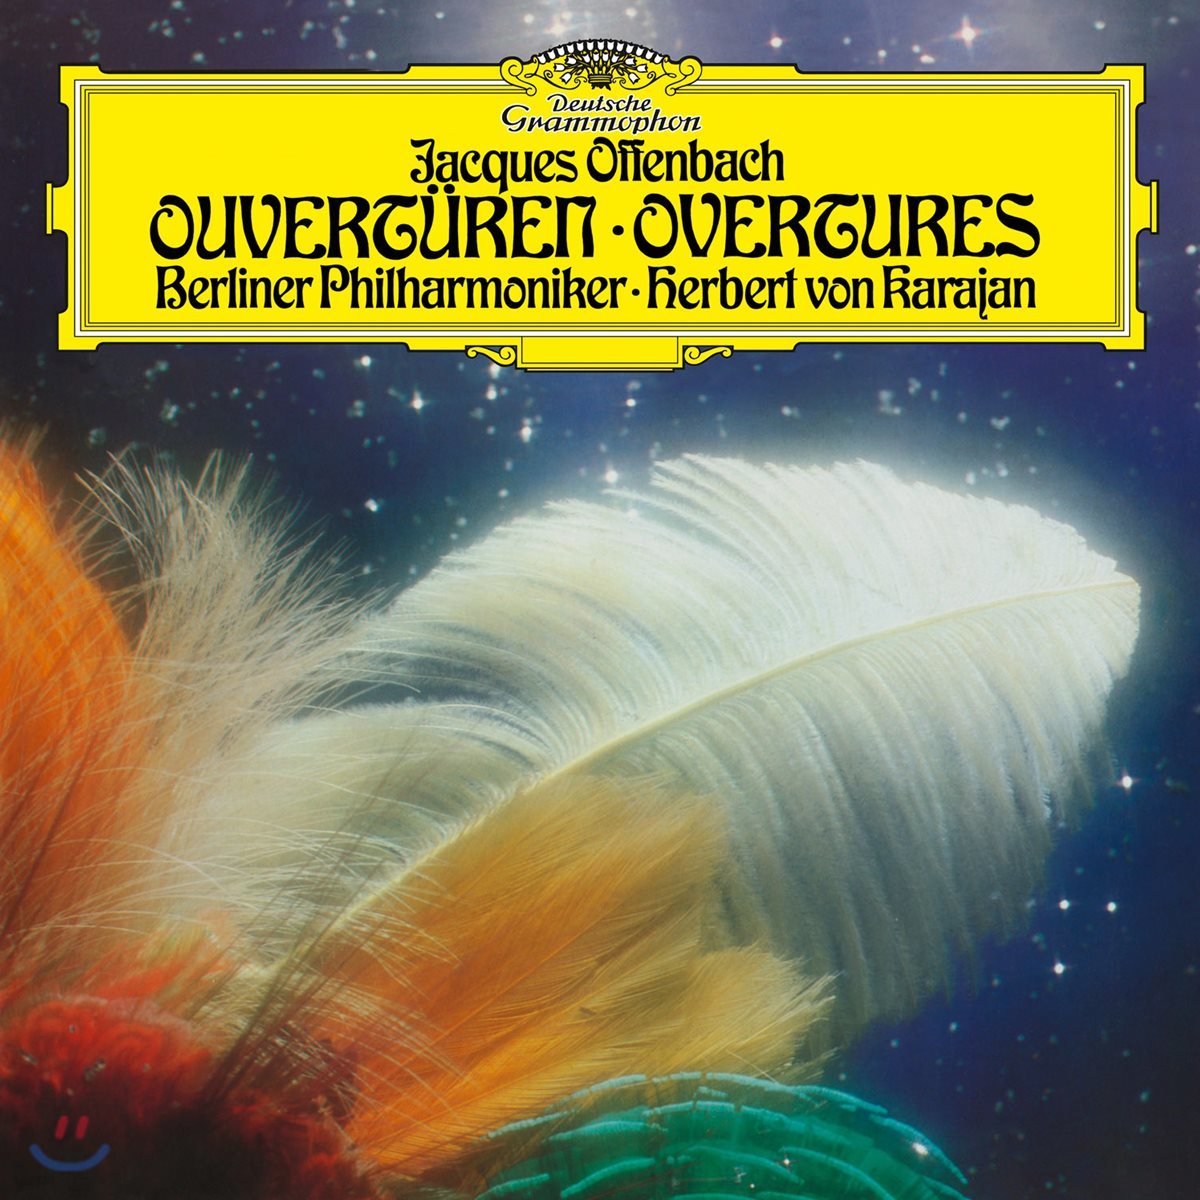 Herbert von Karajan 오펜바흐: 서곡집 (Offenbach: Overtures) [LP]